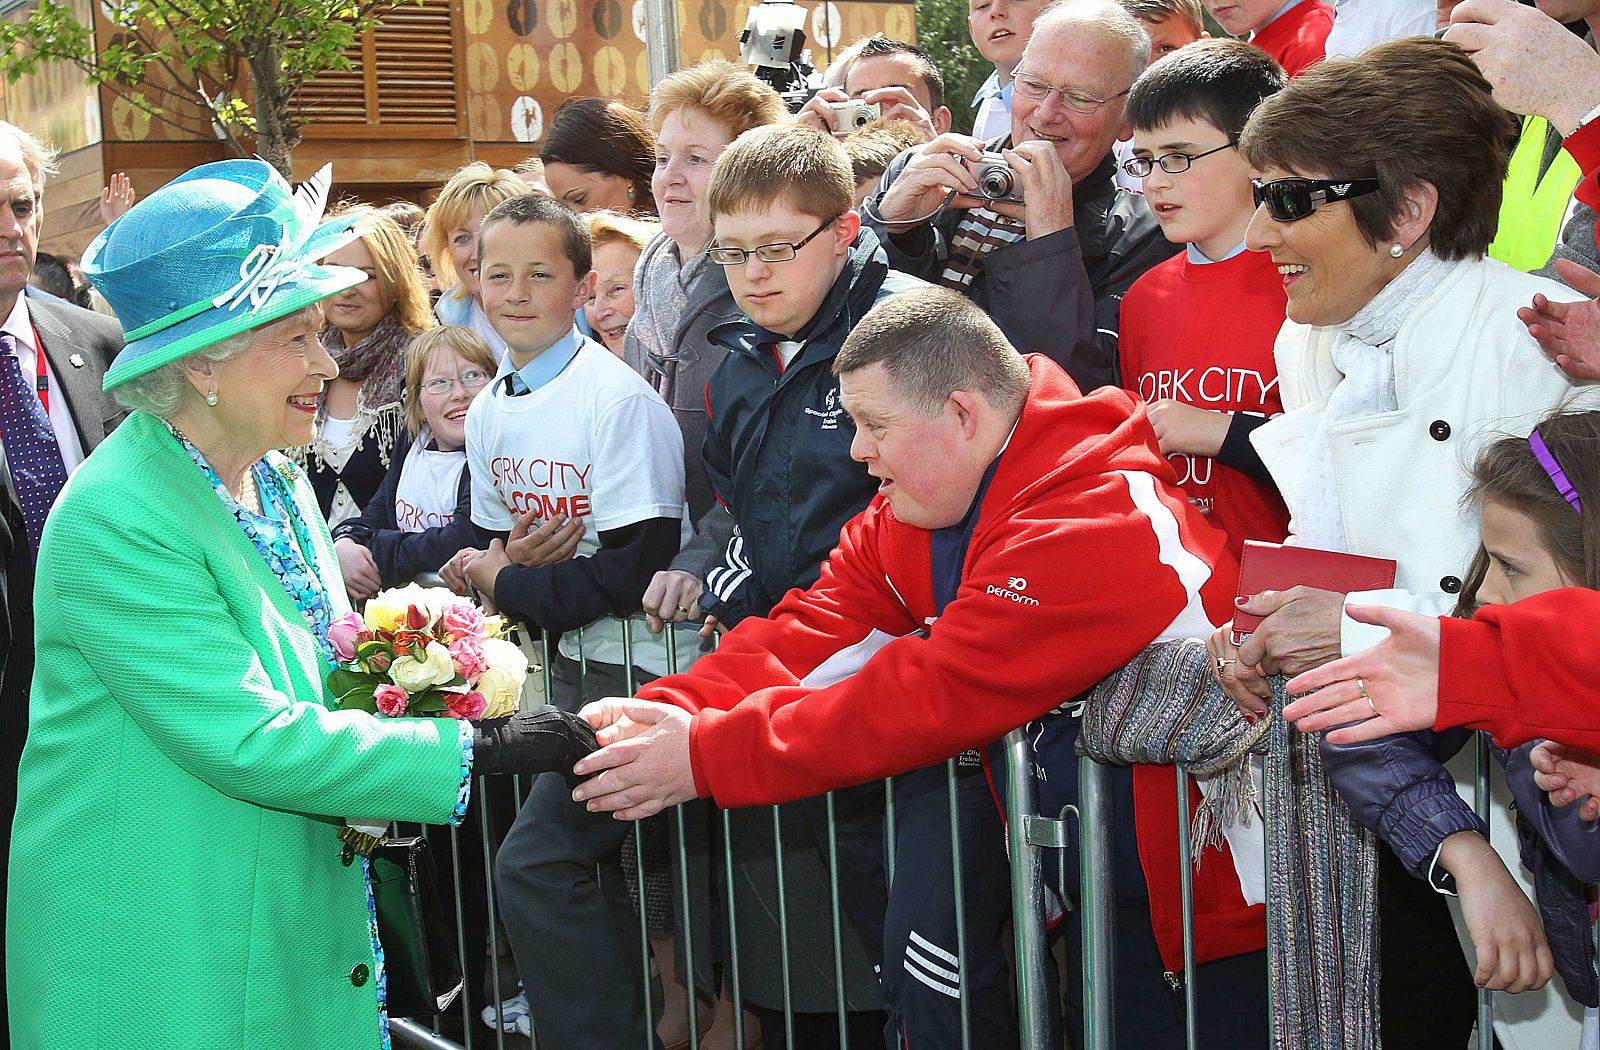 La Reina de Inglaterra saluda a ciudadanos de a pie en el exterior del mercado inglés de Cork.